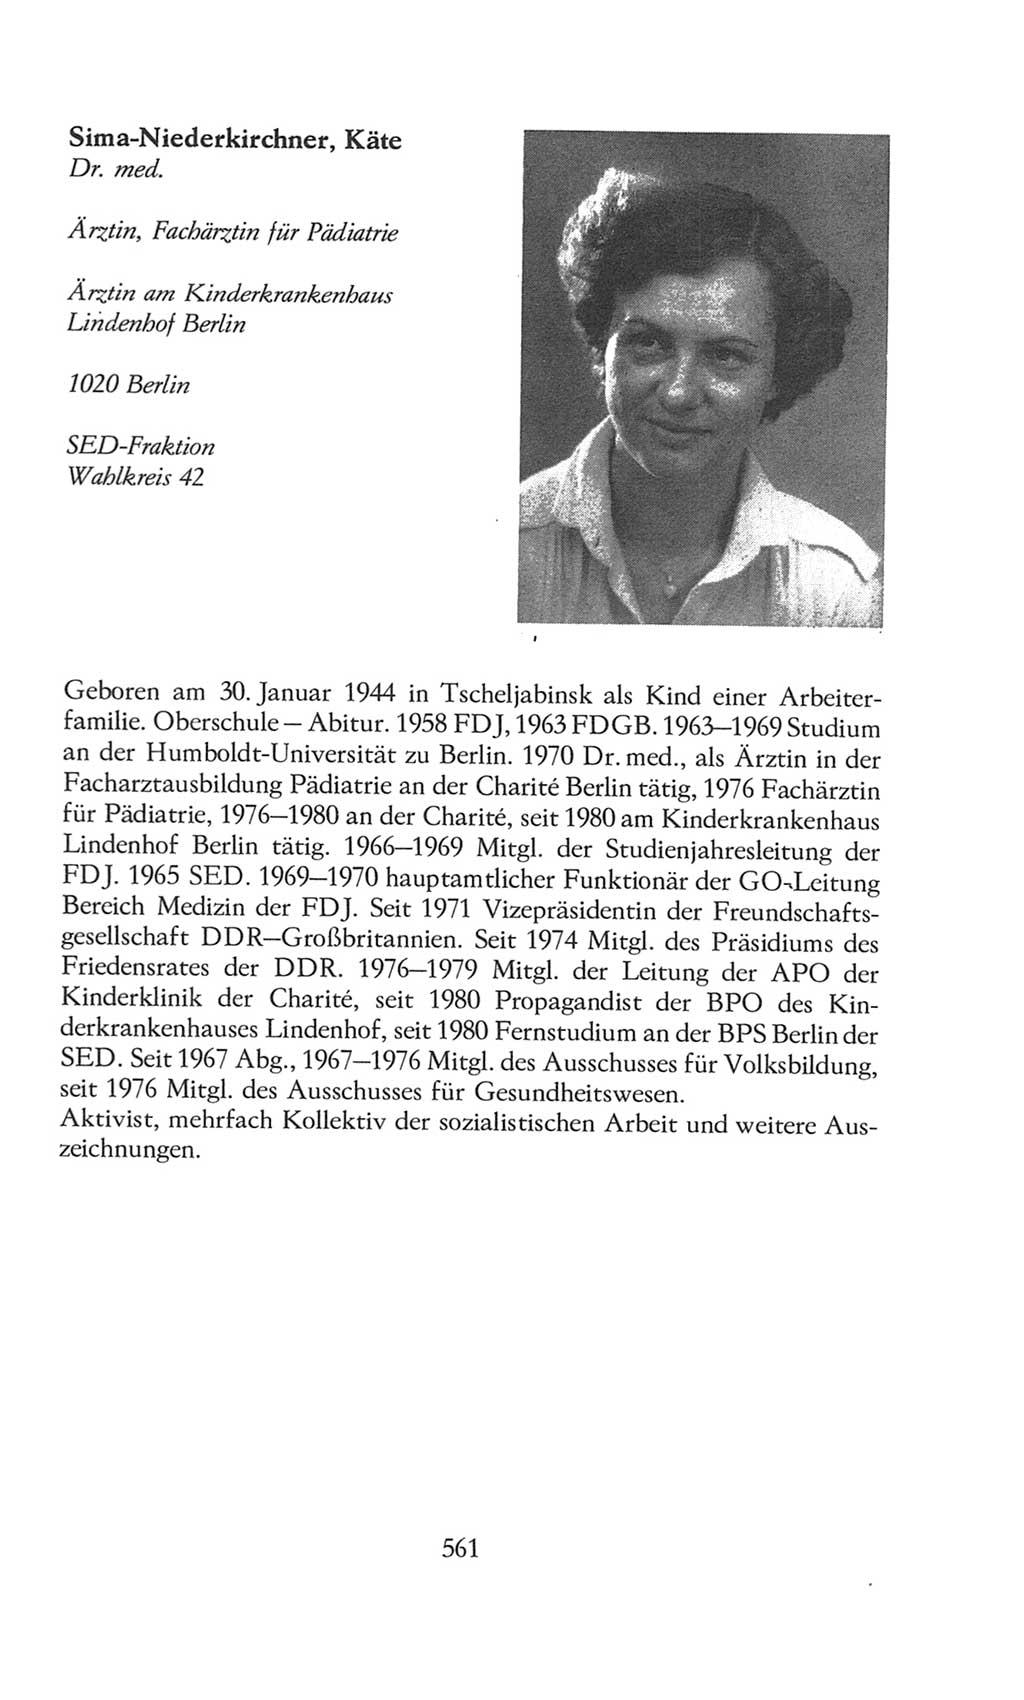 Volkskammer (VK) der Deutschen Demokratischen Republik (DDR), 8. Wahlperiode 1981-1986, Seite 561 (VK. DDR 8. WP. 1981-1986, S. 561)